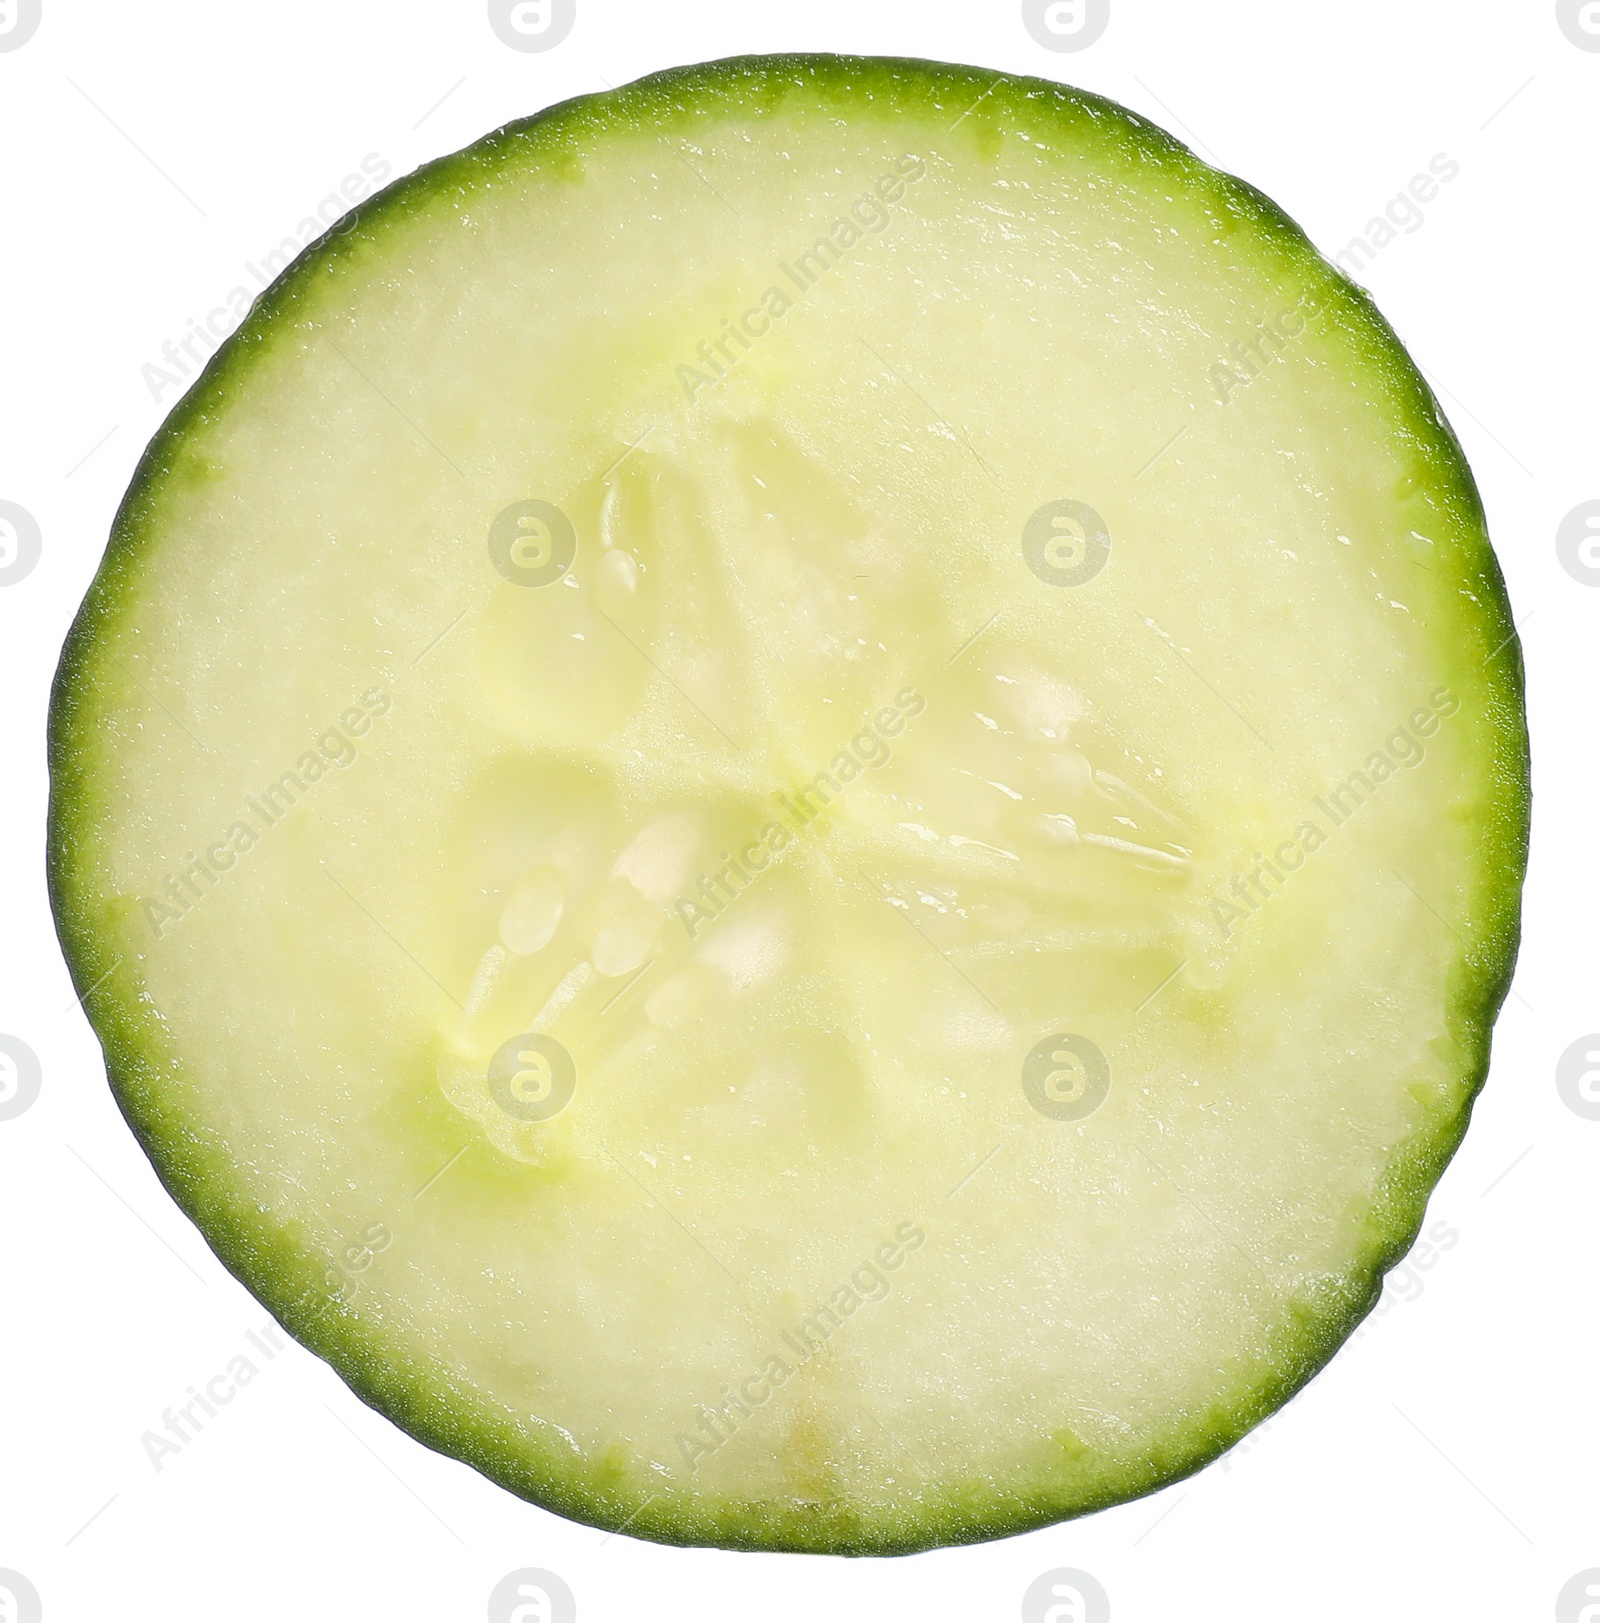 Photo of Slice of fresh cucumber isolated on white